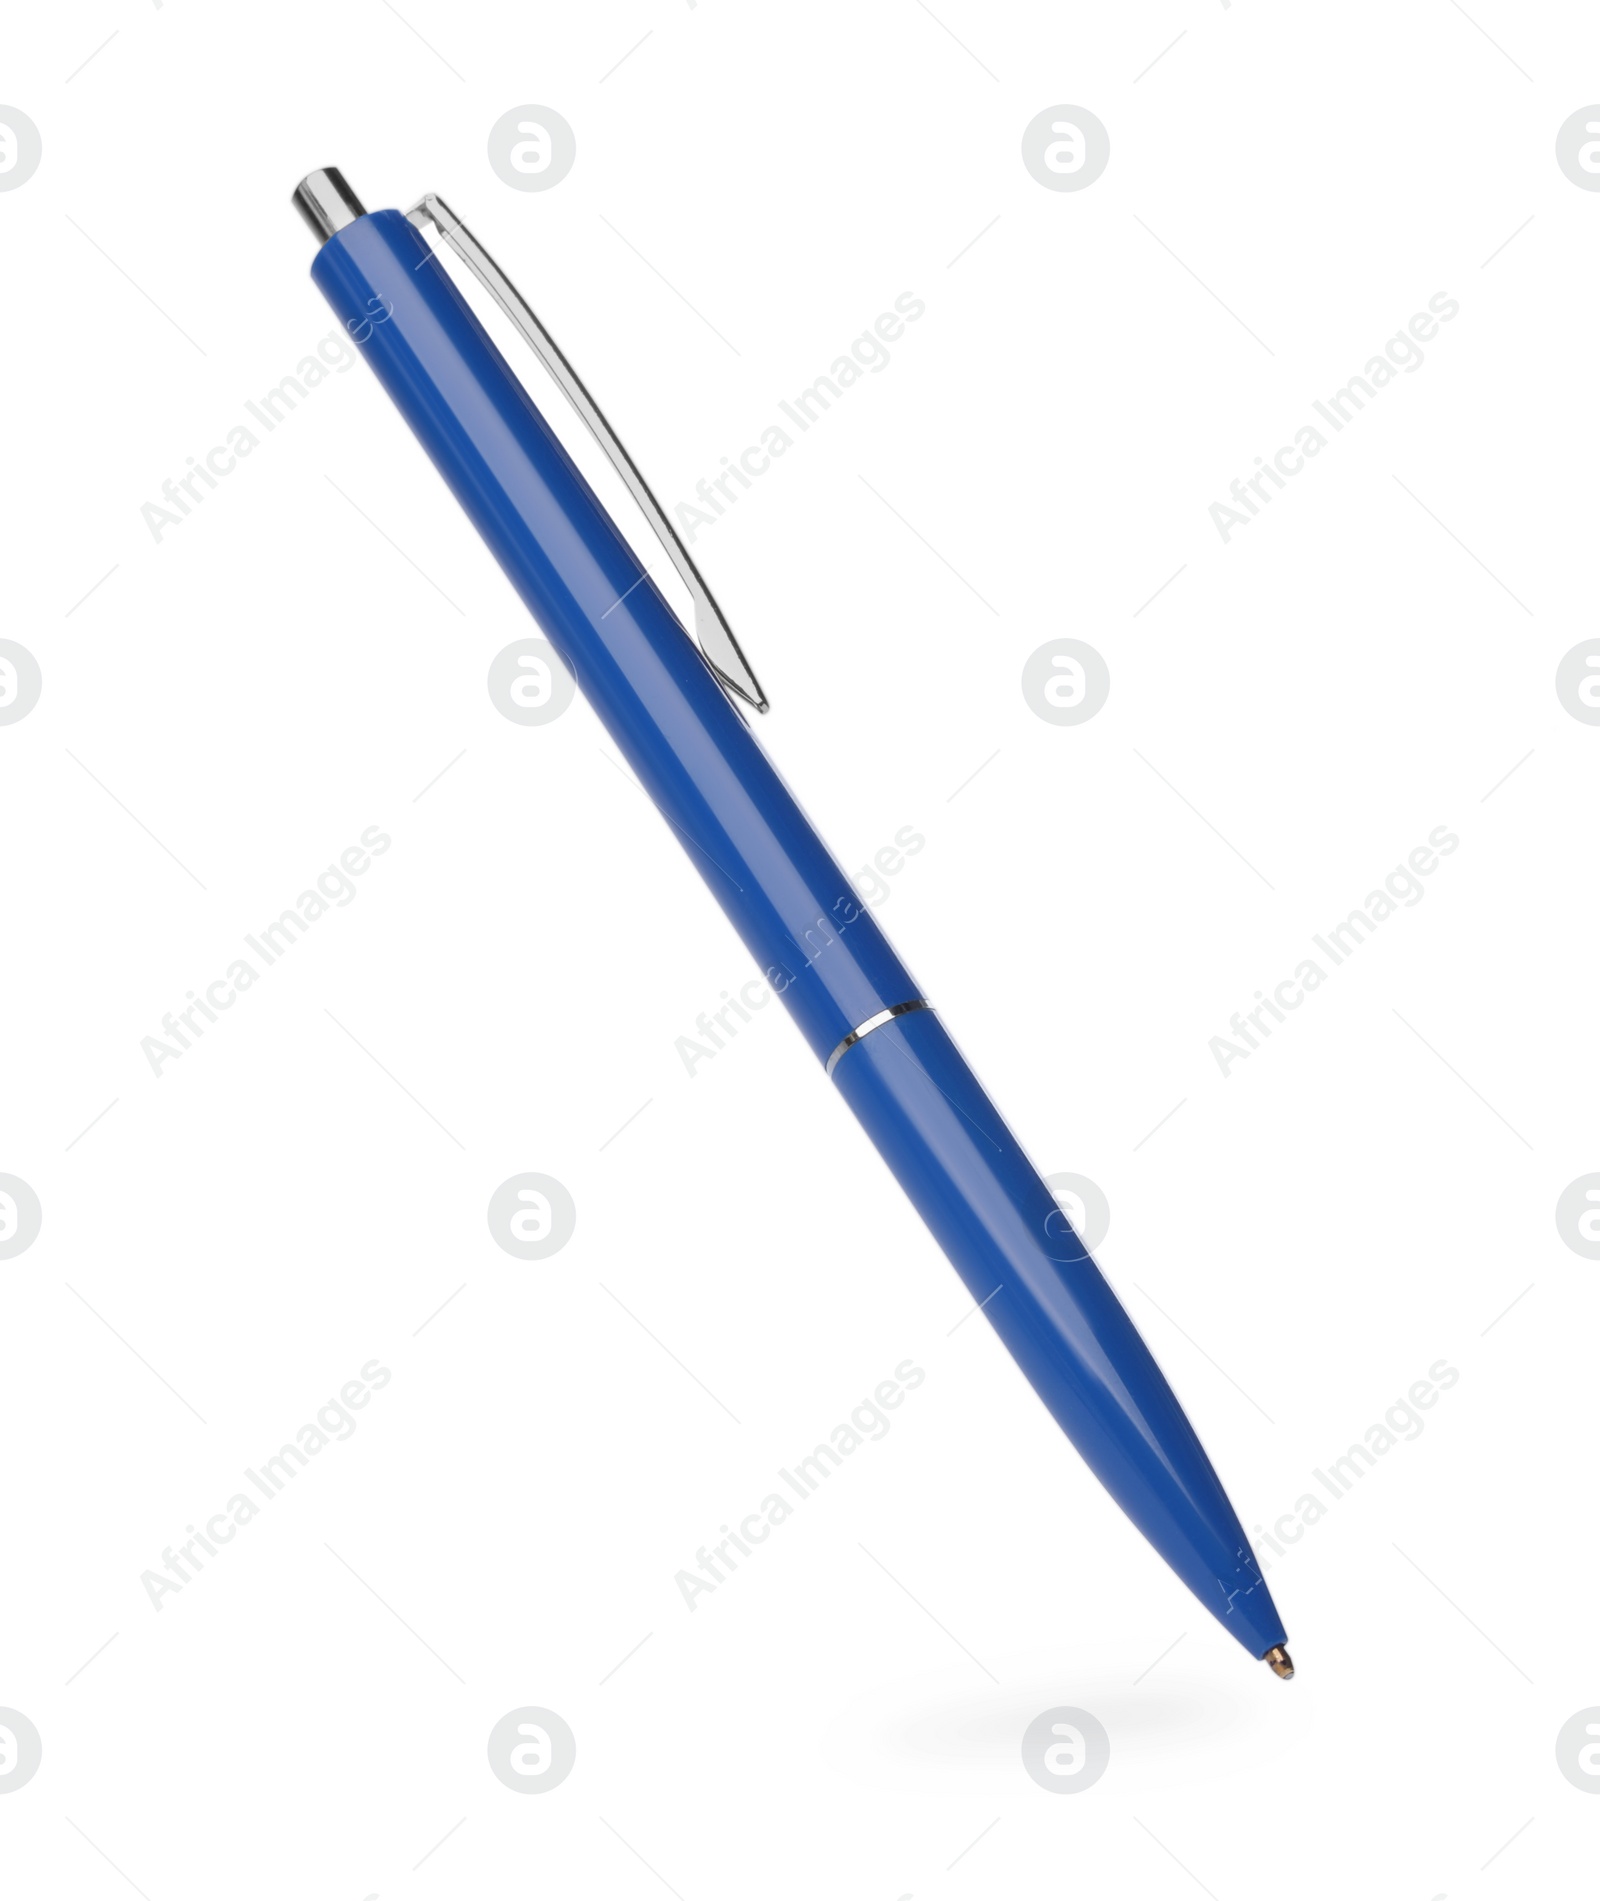 Photo of New stylish blue pen isolated on white